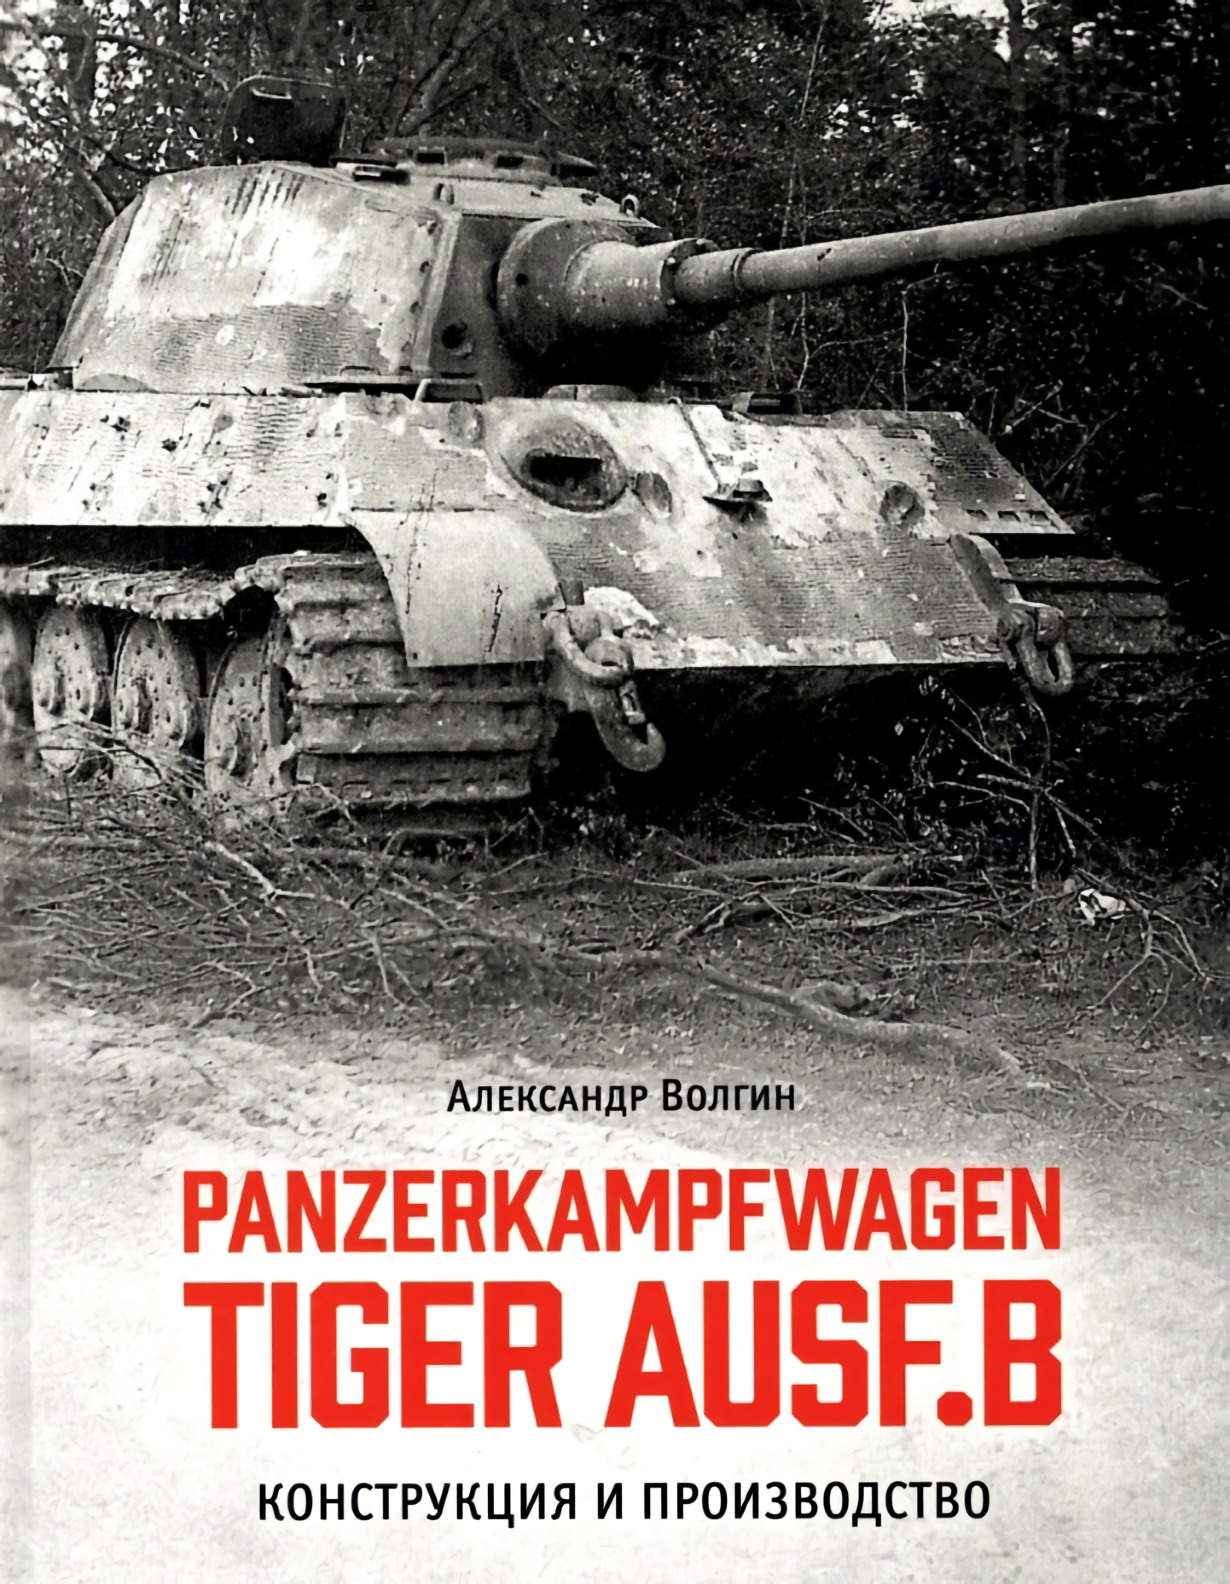 Волгин Александр - Panzerkampfwagen TIGER AUSF. B Конструкция и производство